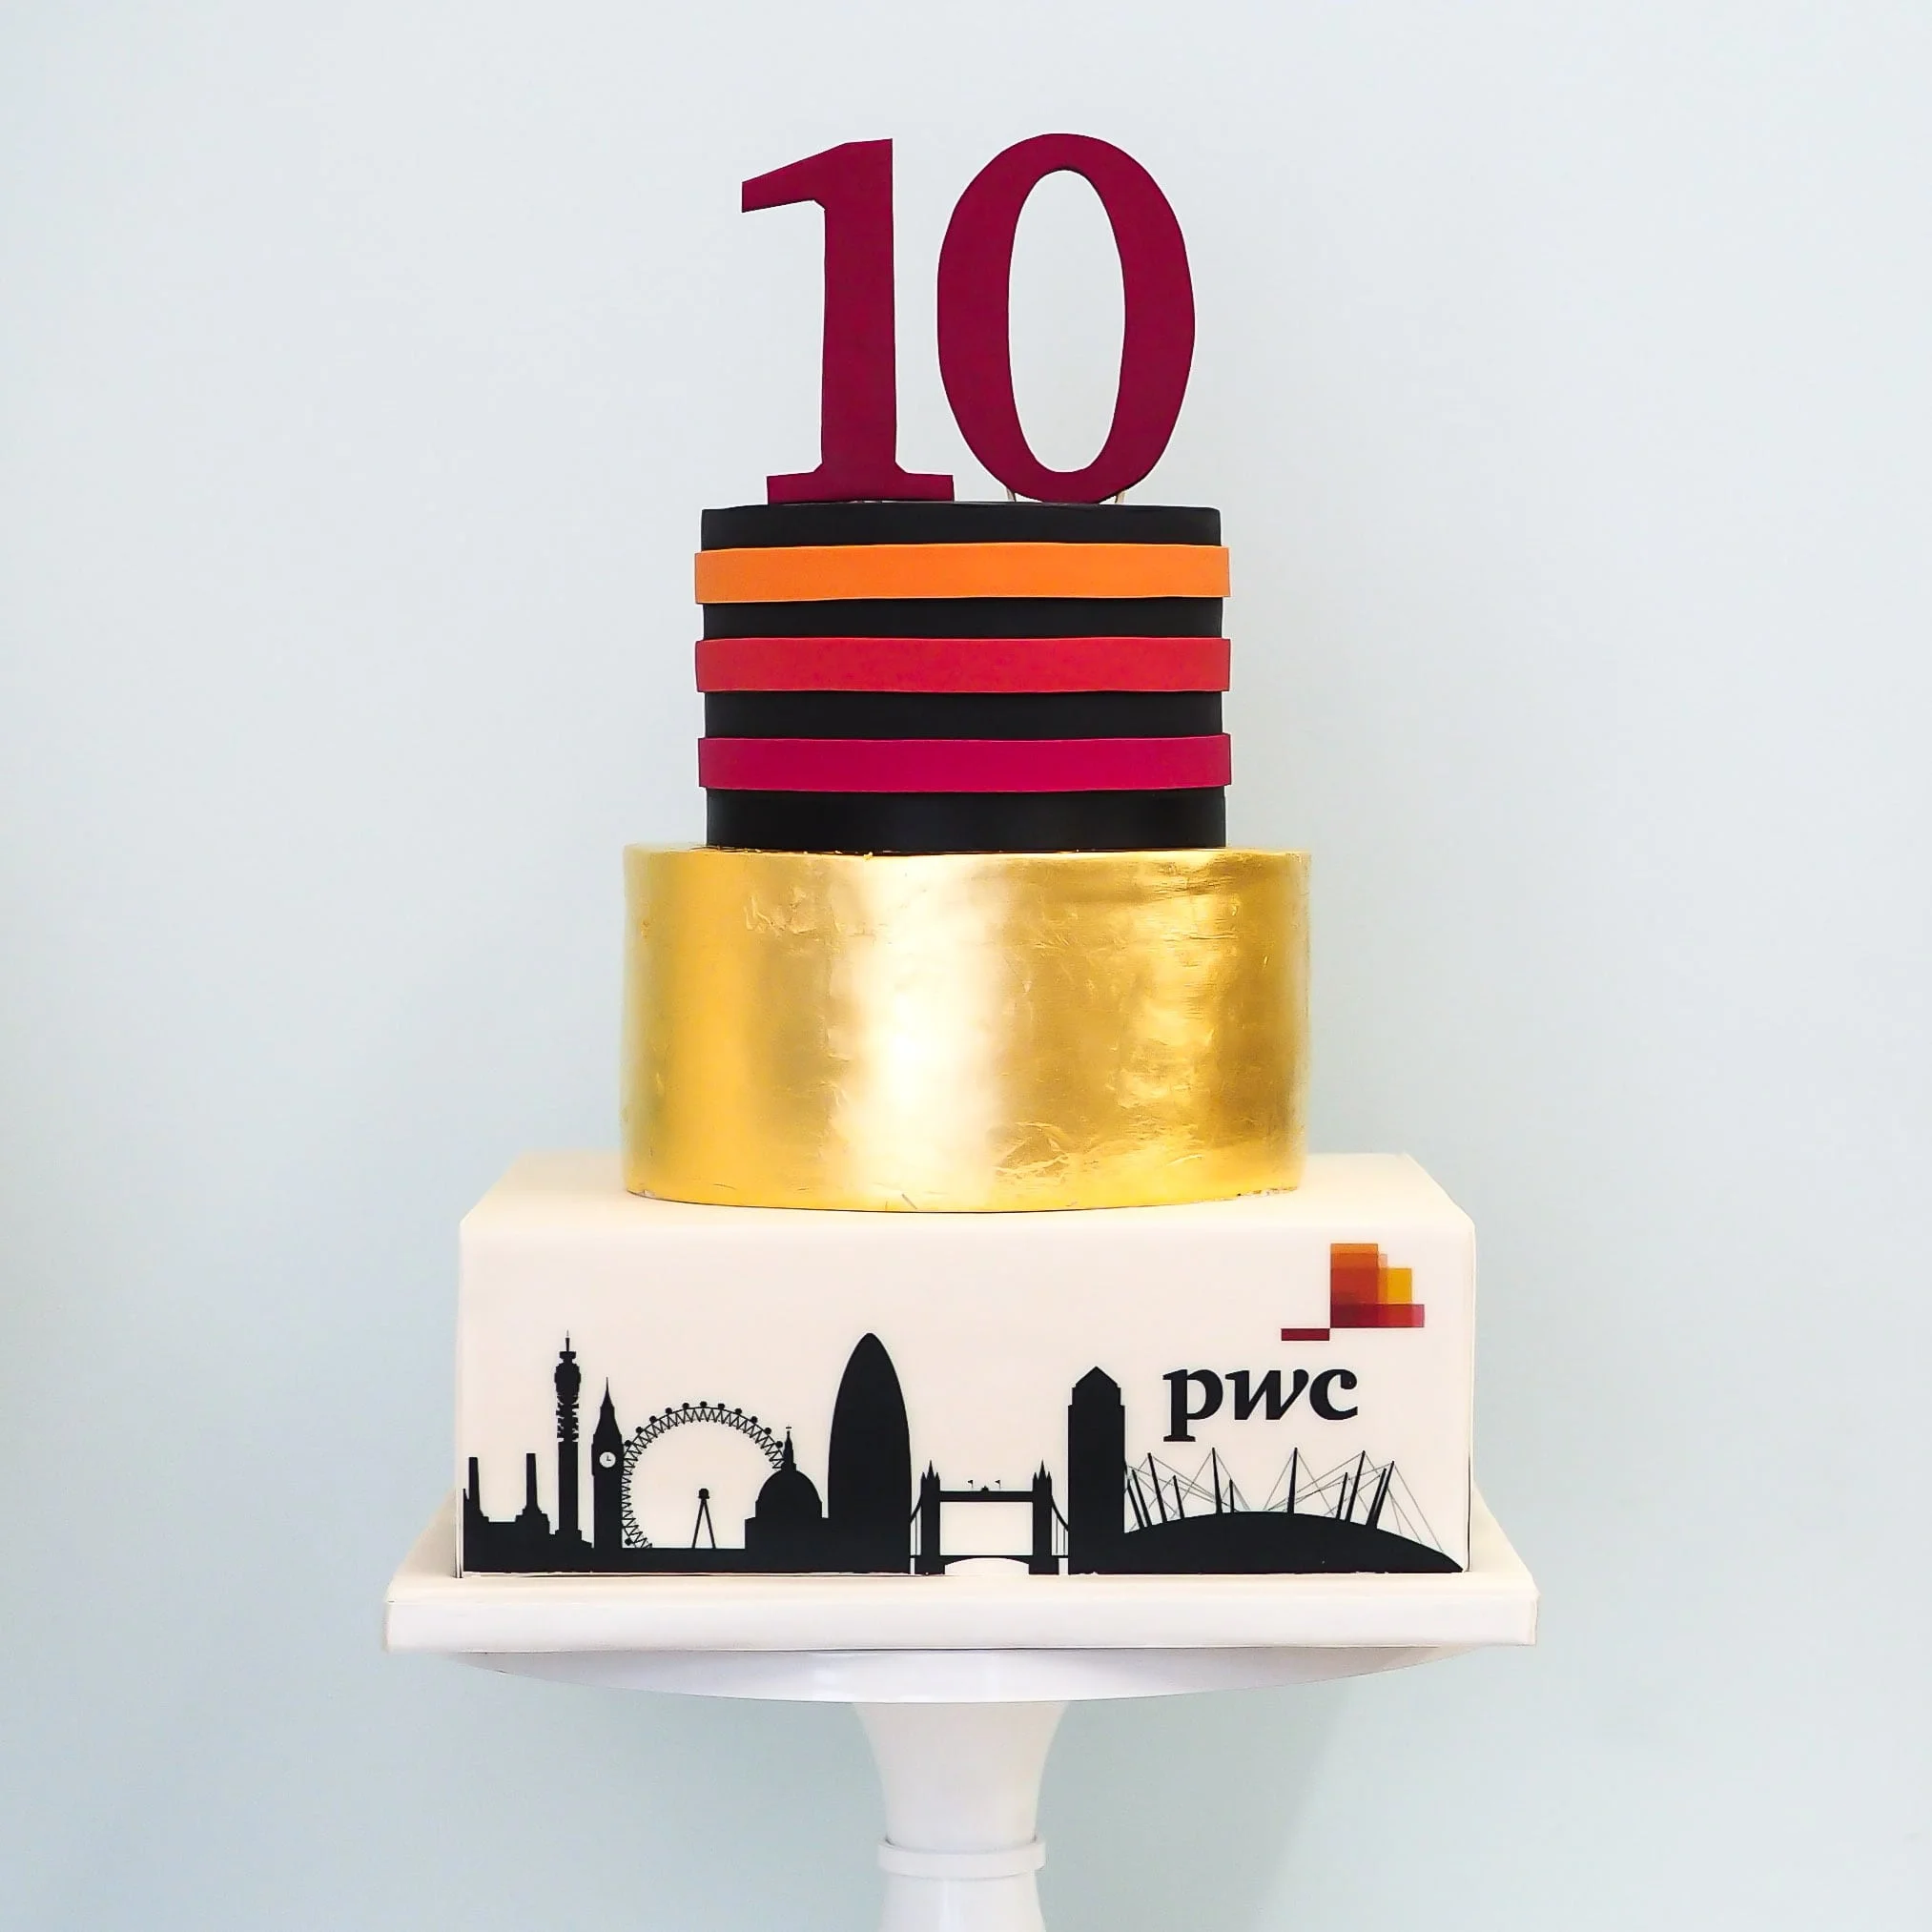 Corporate Anniversary Cake | Engagement cake design